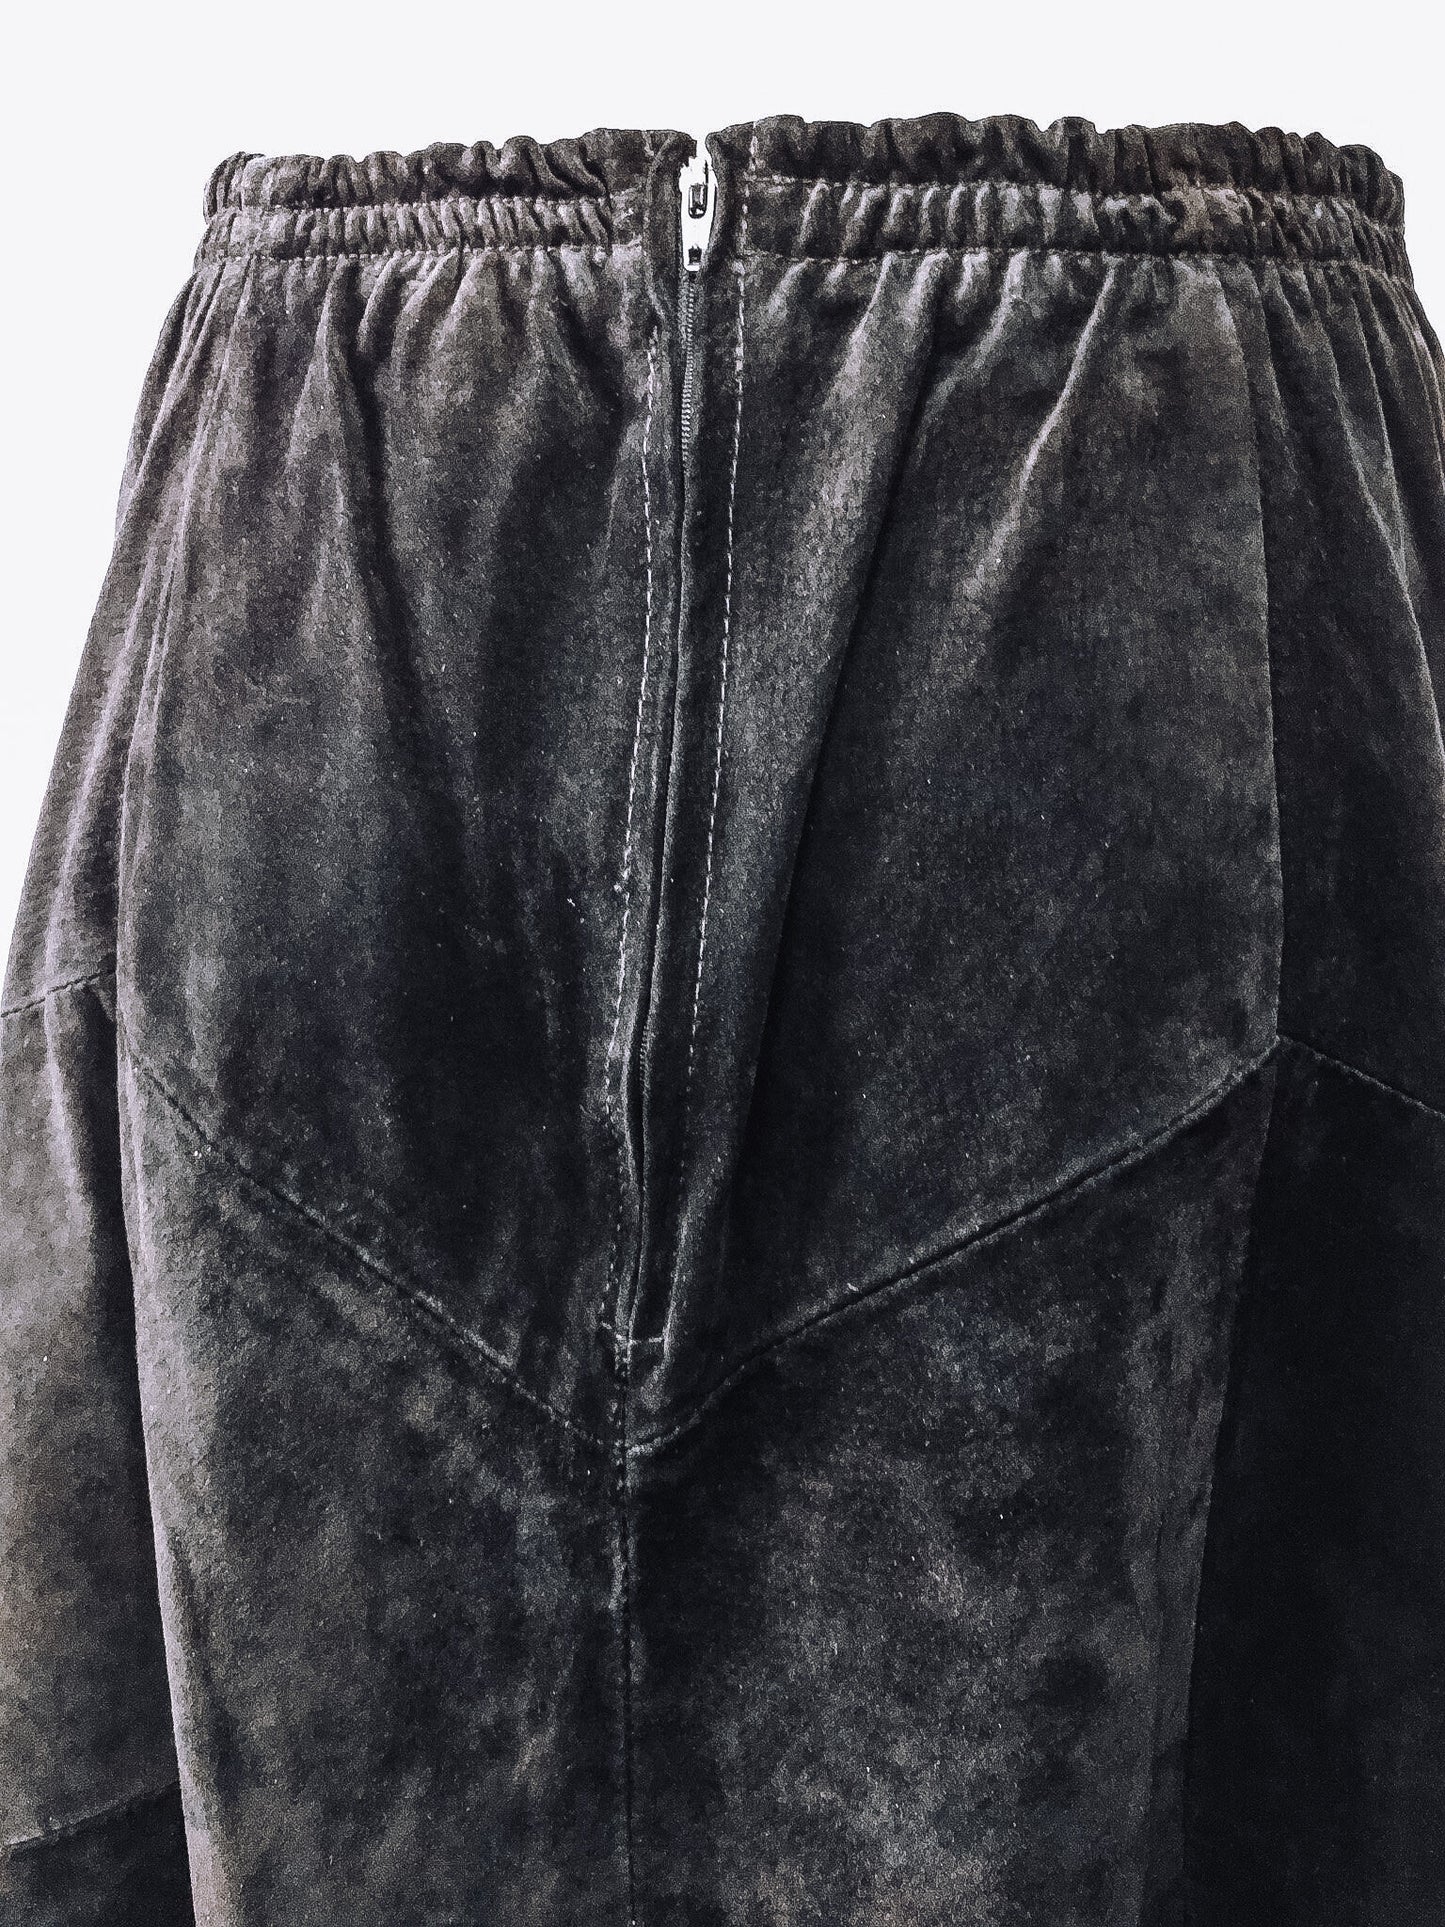 Vintage Pioneer Wear Black Leather Maxi Skirt, Vintage Sz. 12